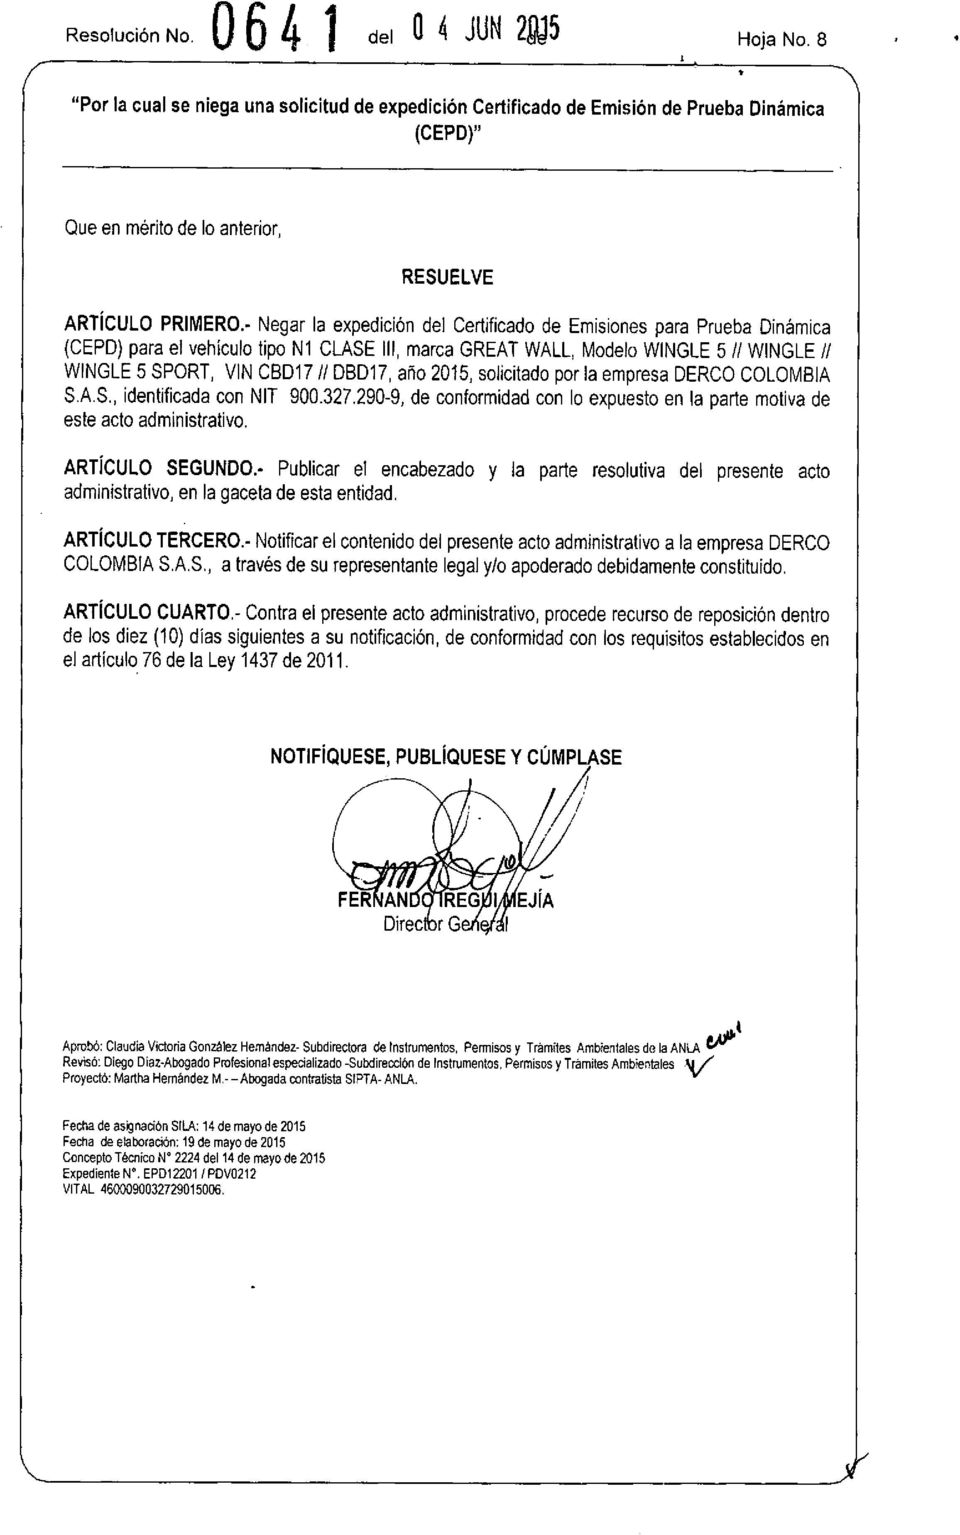 ario 2015, solicitado por la empresa DERCO COLOMBIA SAS., identificada con NIT 900.327.290-9, de conformidad con lo expuesto en la parte motiva de este acto administrativo. ARTÍCULO SEGUNDO.